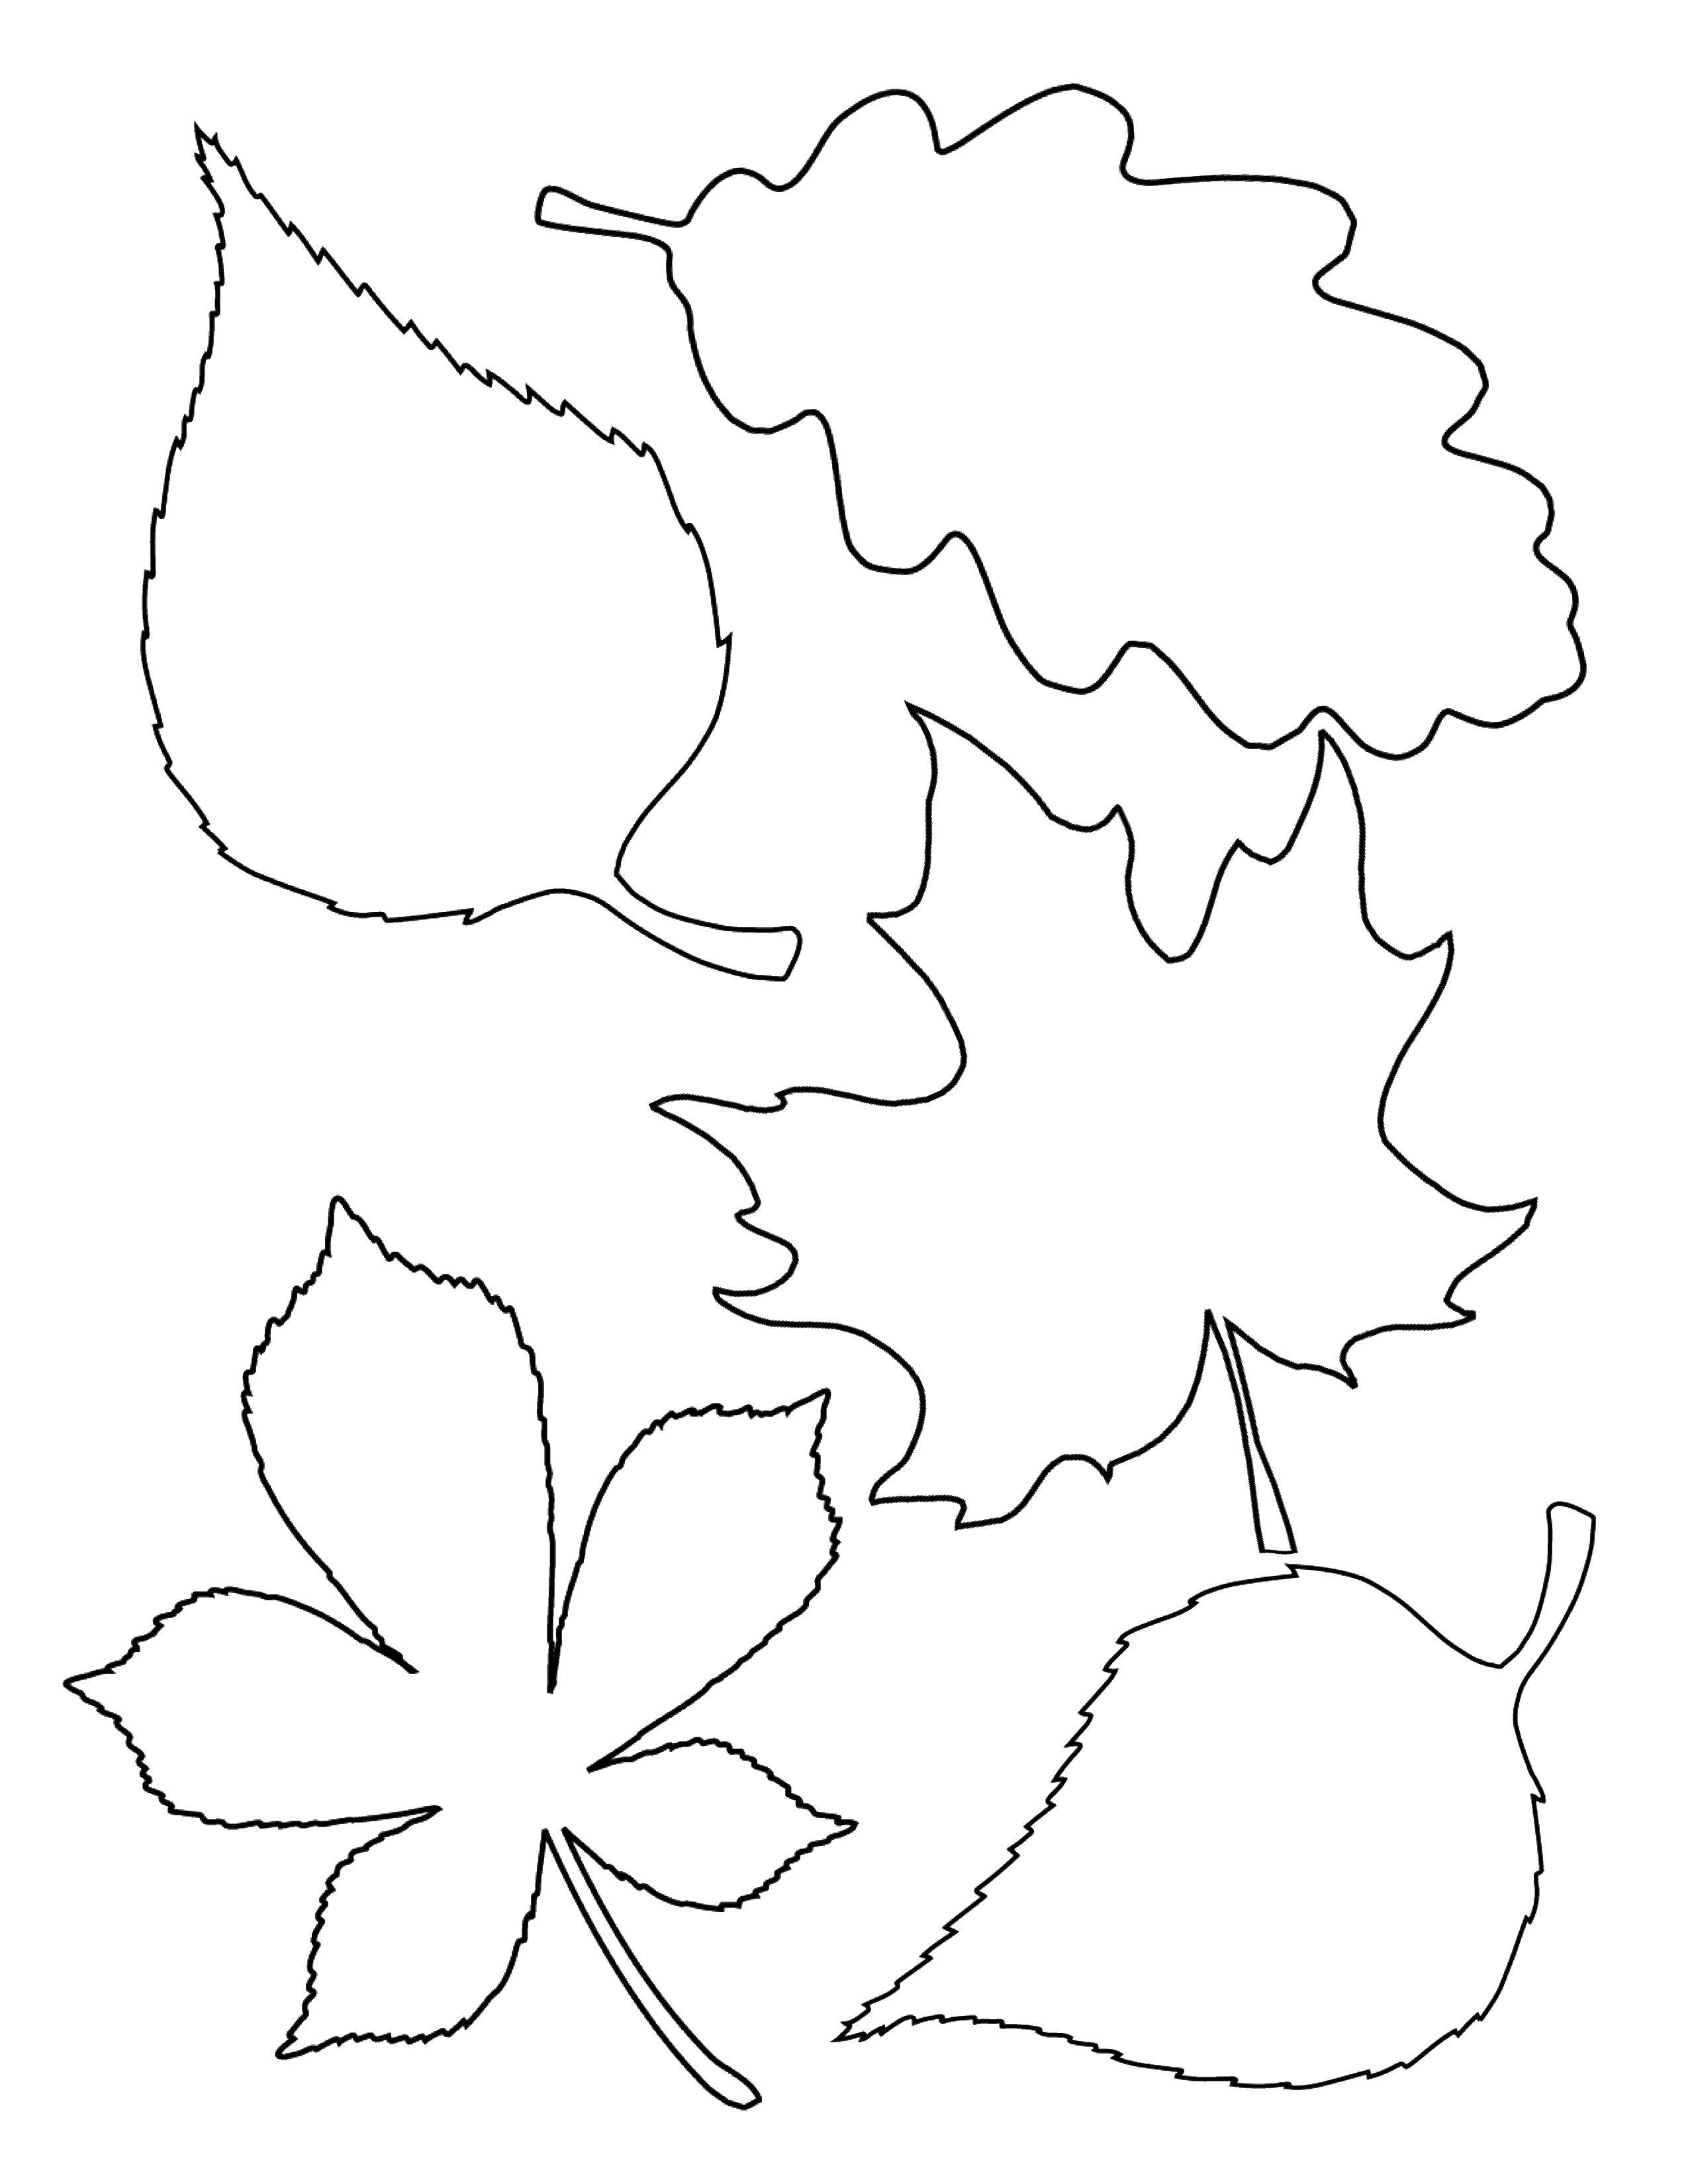 Название: Раскраска Листья. Категория: Контуры листьев деревьев. Теги: листья.